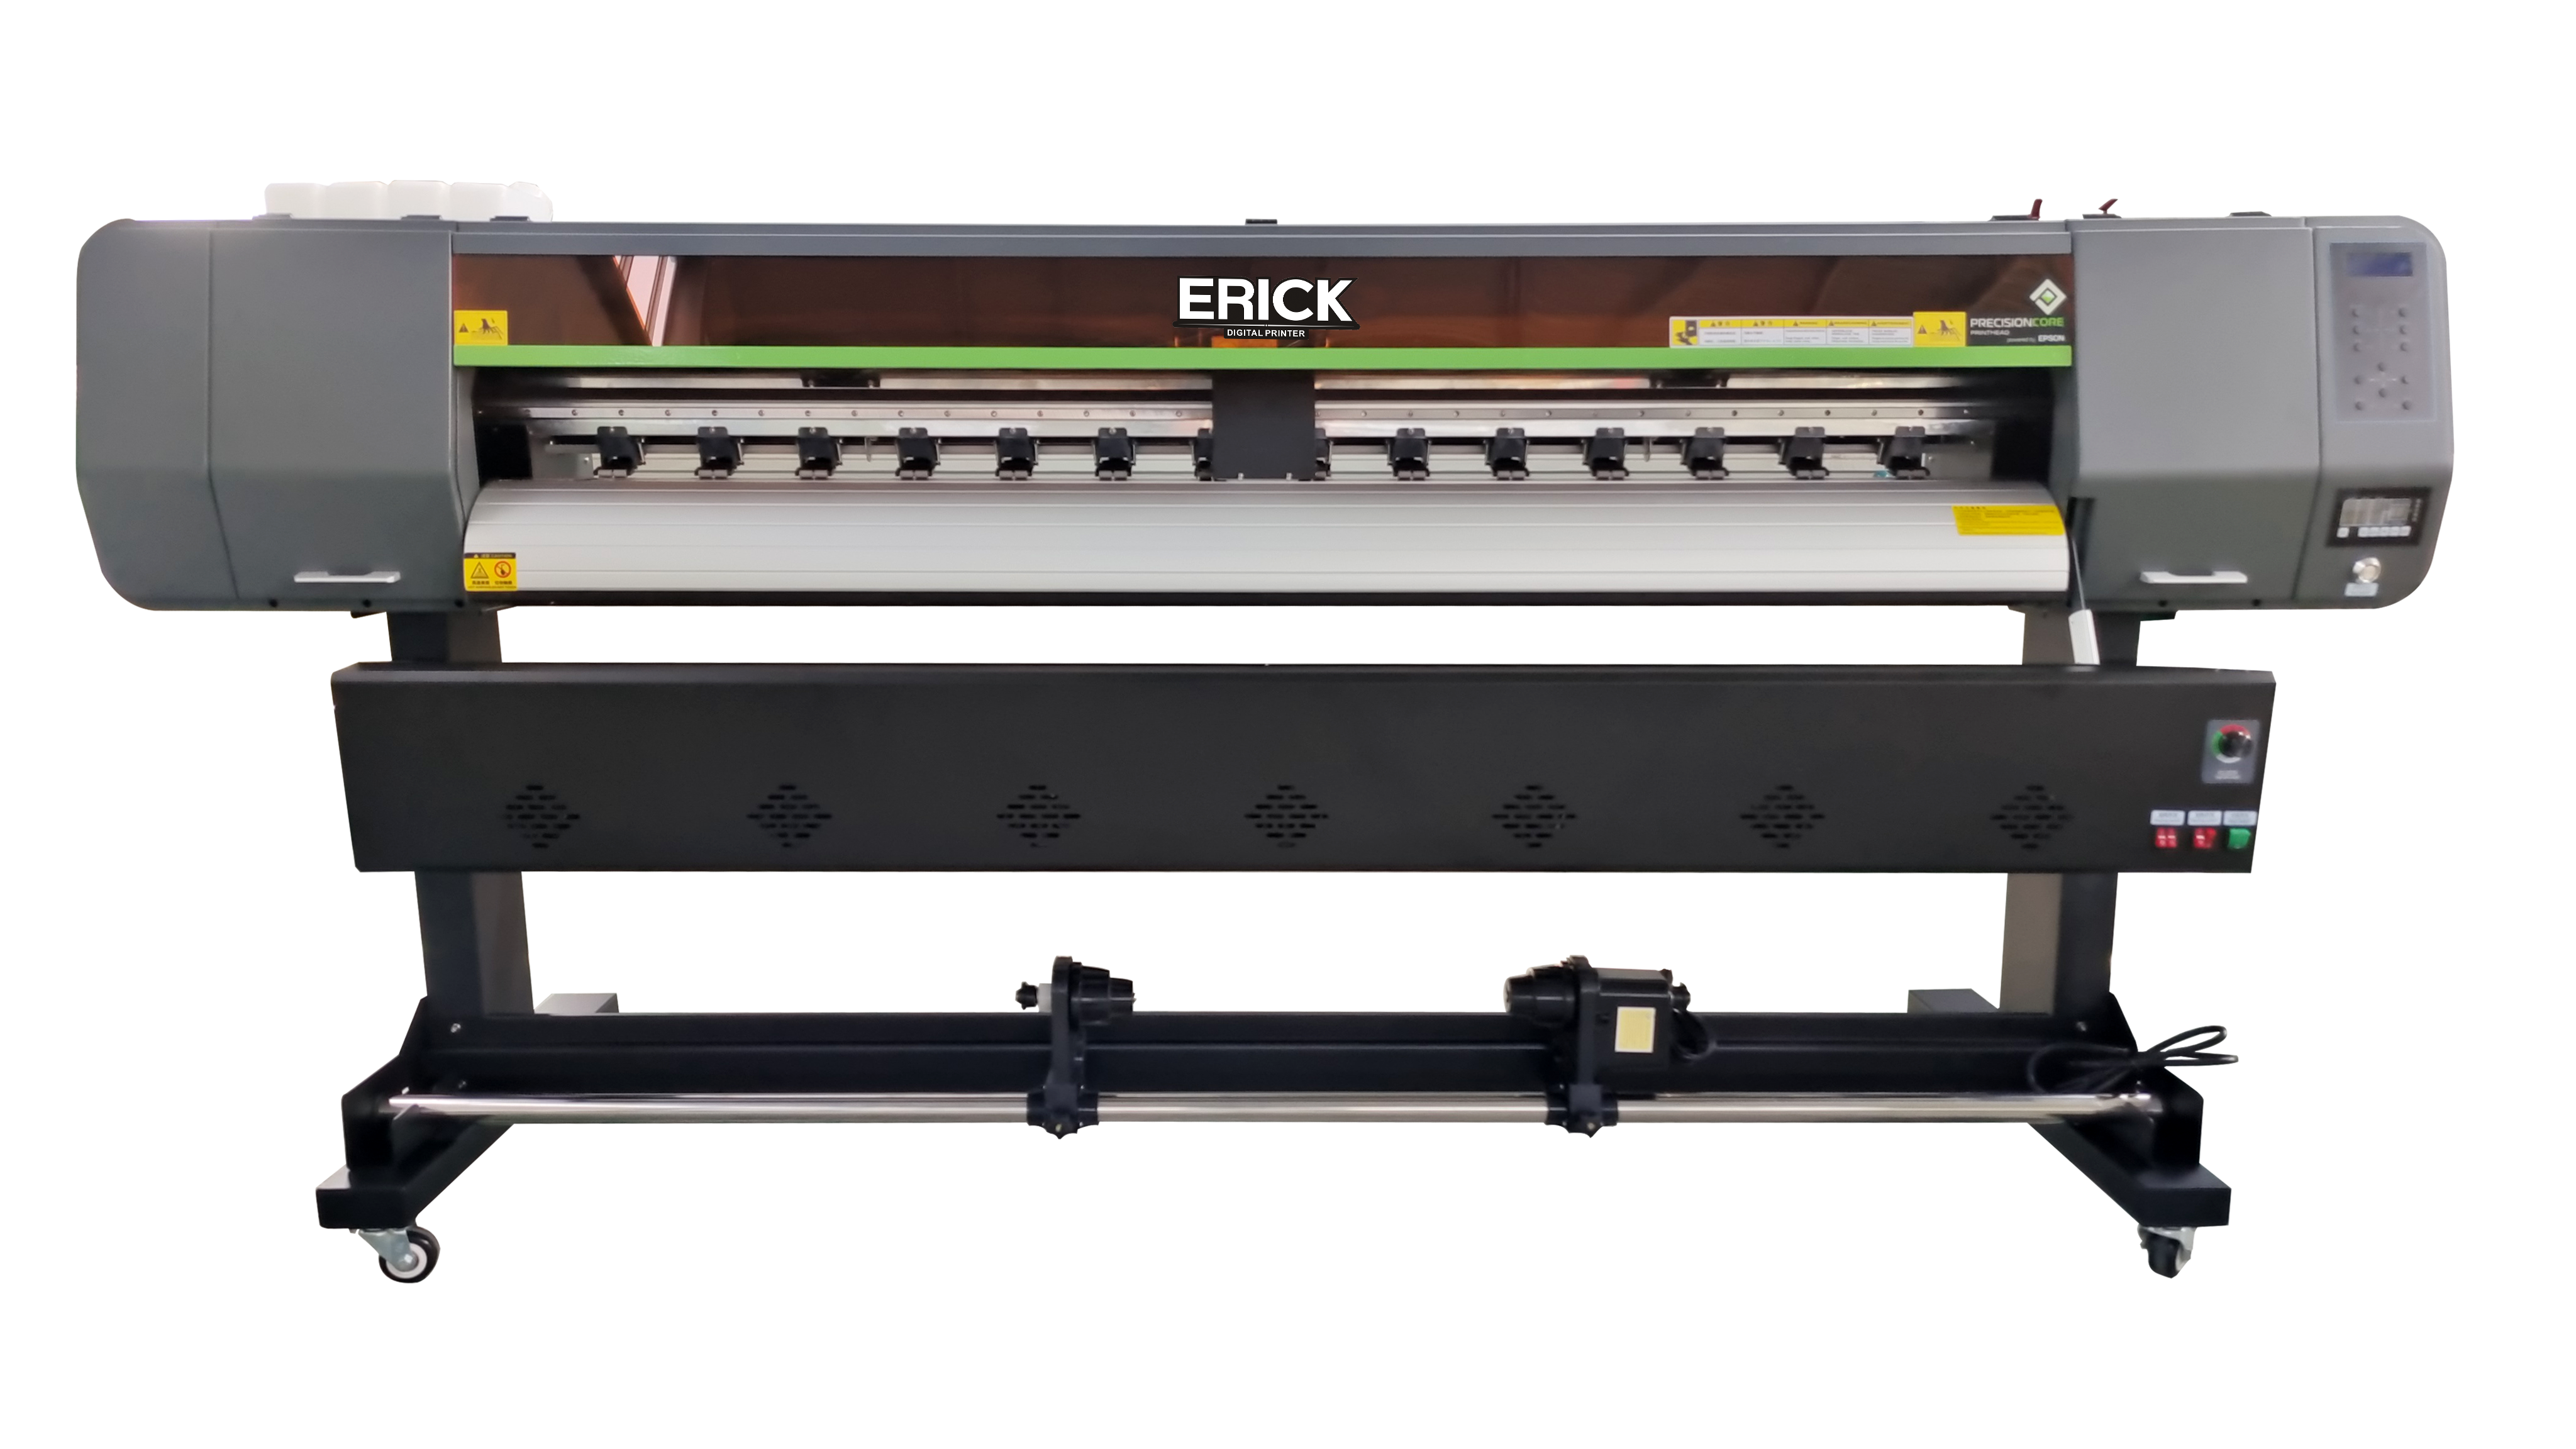 Erick 1801 ជាមួយក្បាលបោះពុម្ព EP-I3200-A1/E1 1 កុំព្យូទ័រ